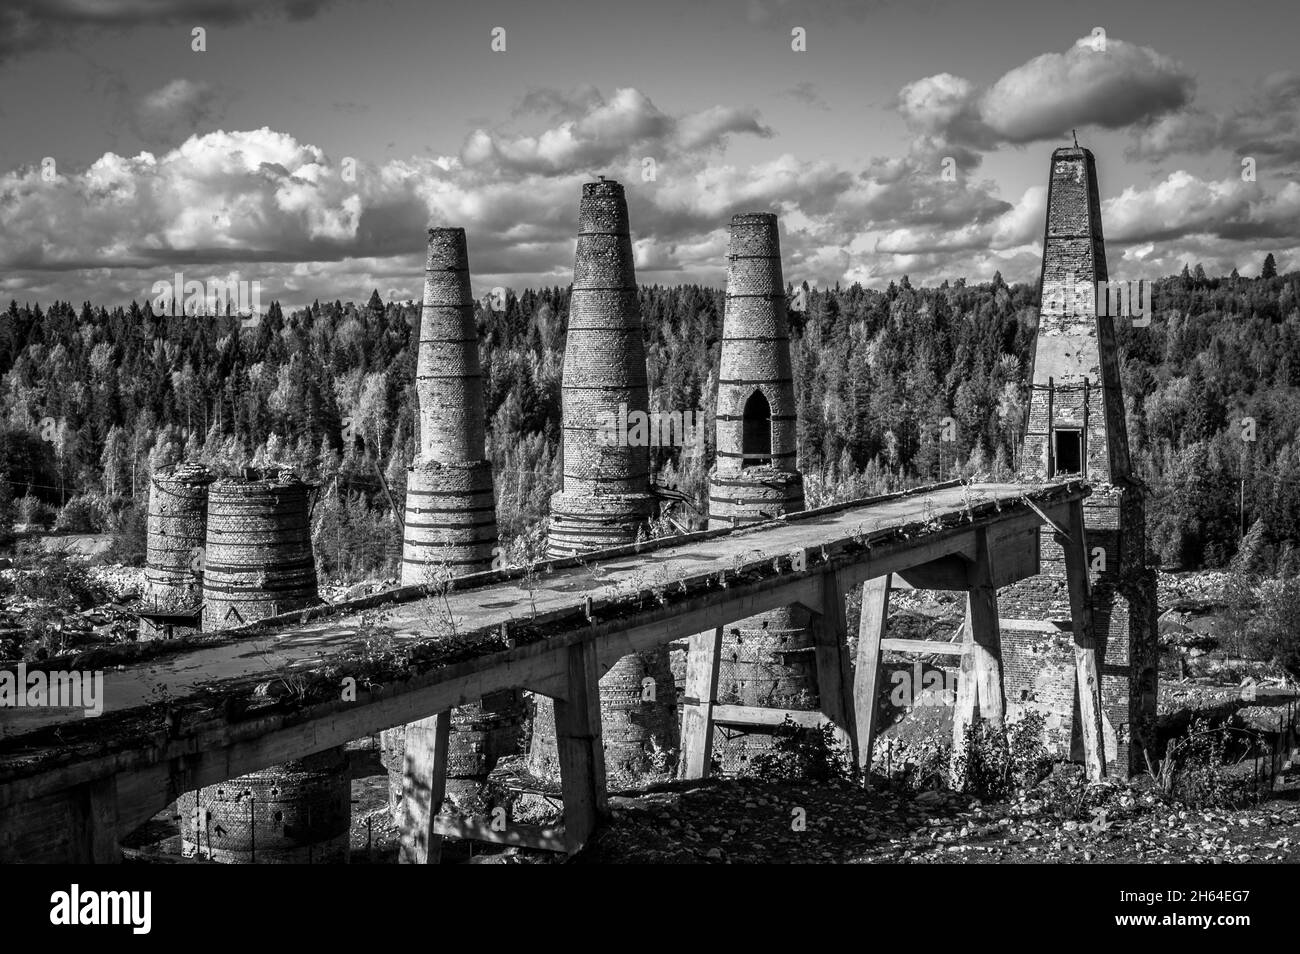 Ruines d'une usine de marbre abandonnée et de fours à chaux dans le parc de montagne de Ruskeala.Carélie, Russie.Noir et blanc. Banque D'Images